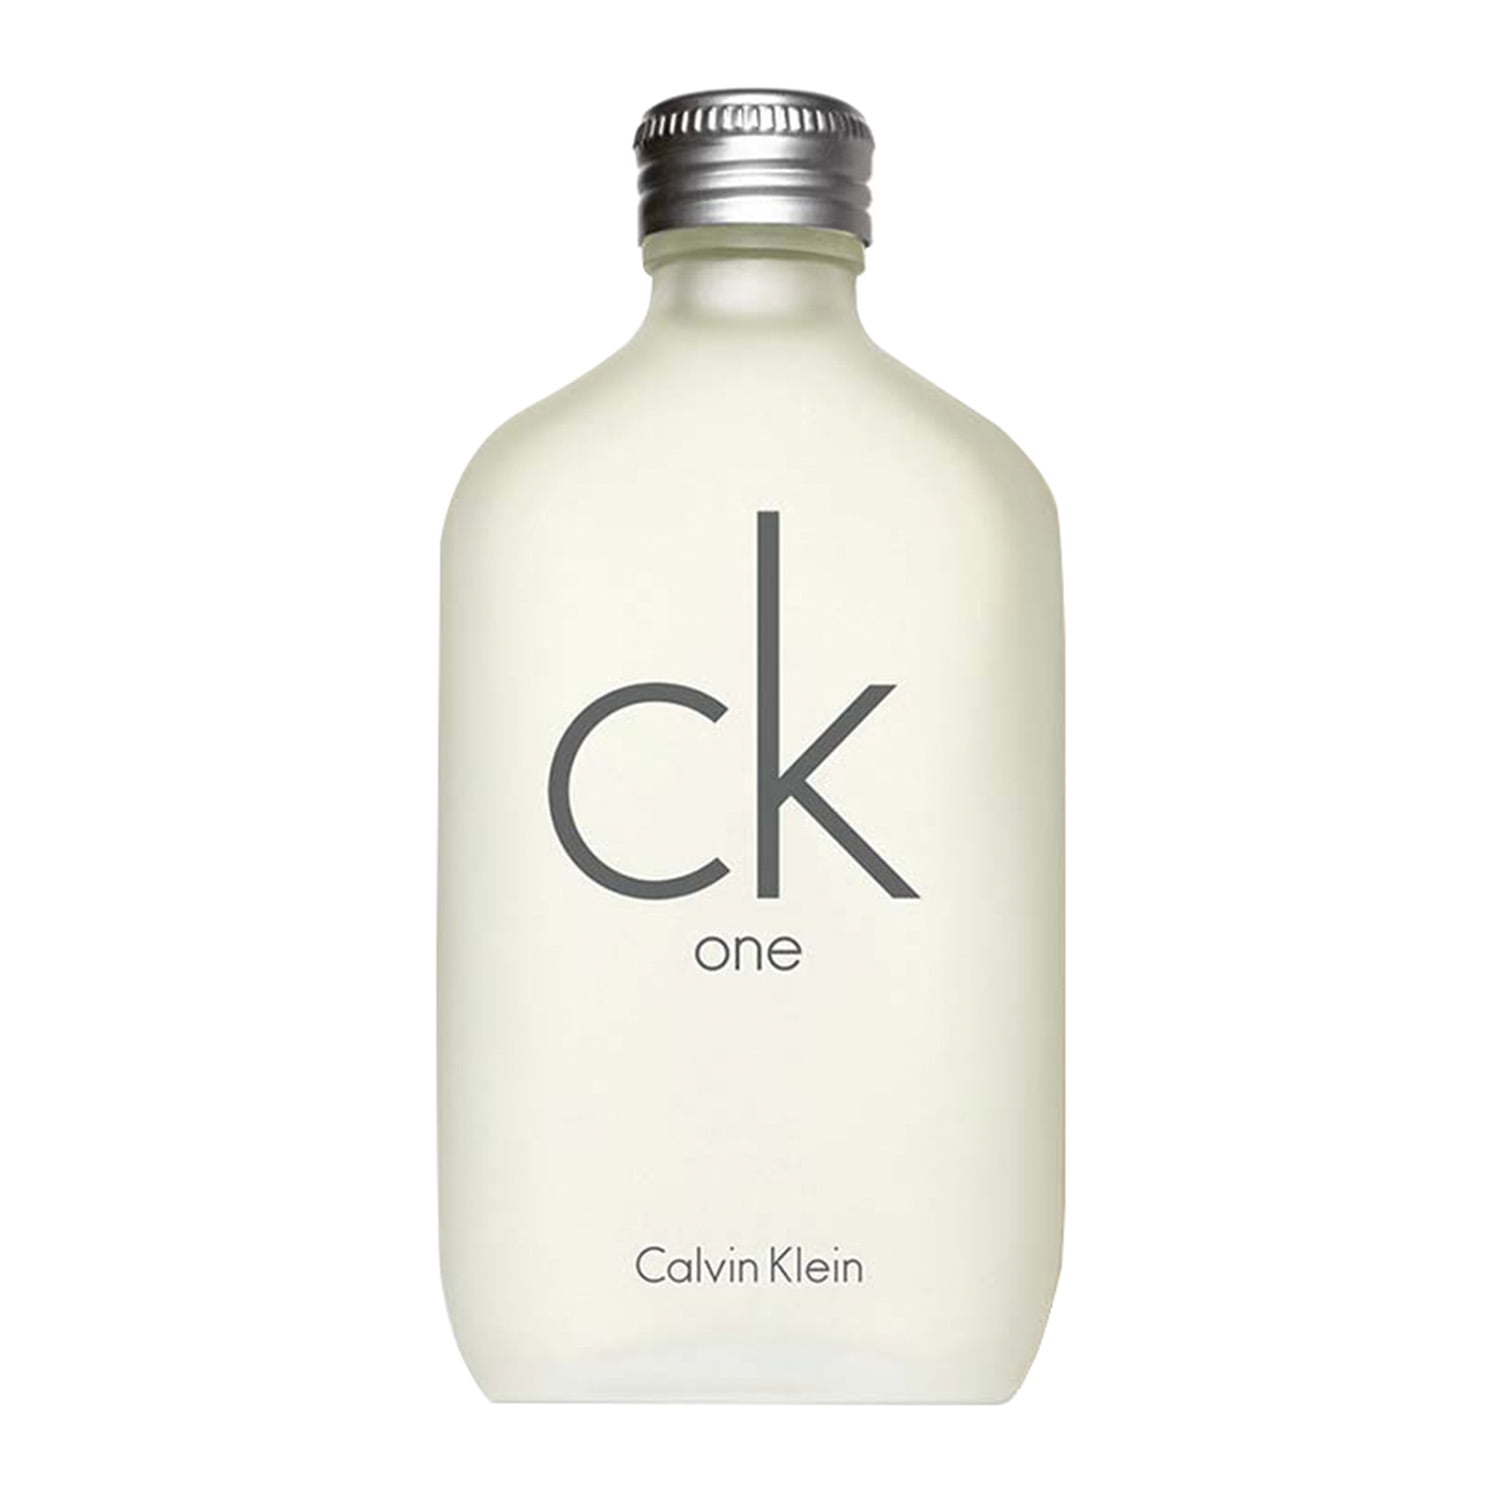 Calvin Klein CK One Eau de Toilette, Cologne for Men or Women, 3.4 oz - Walmart.com